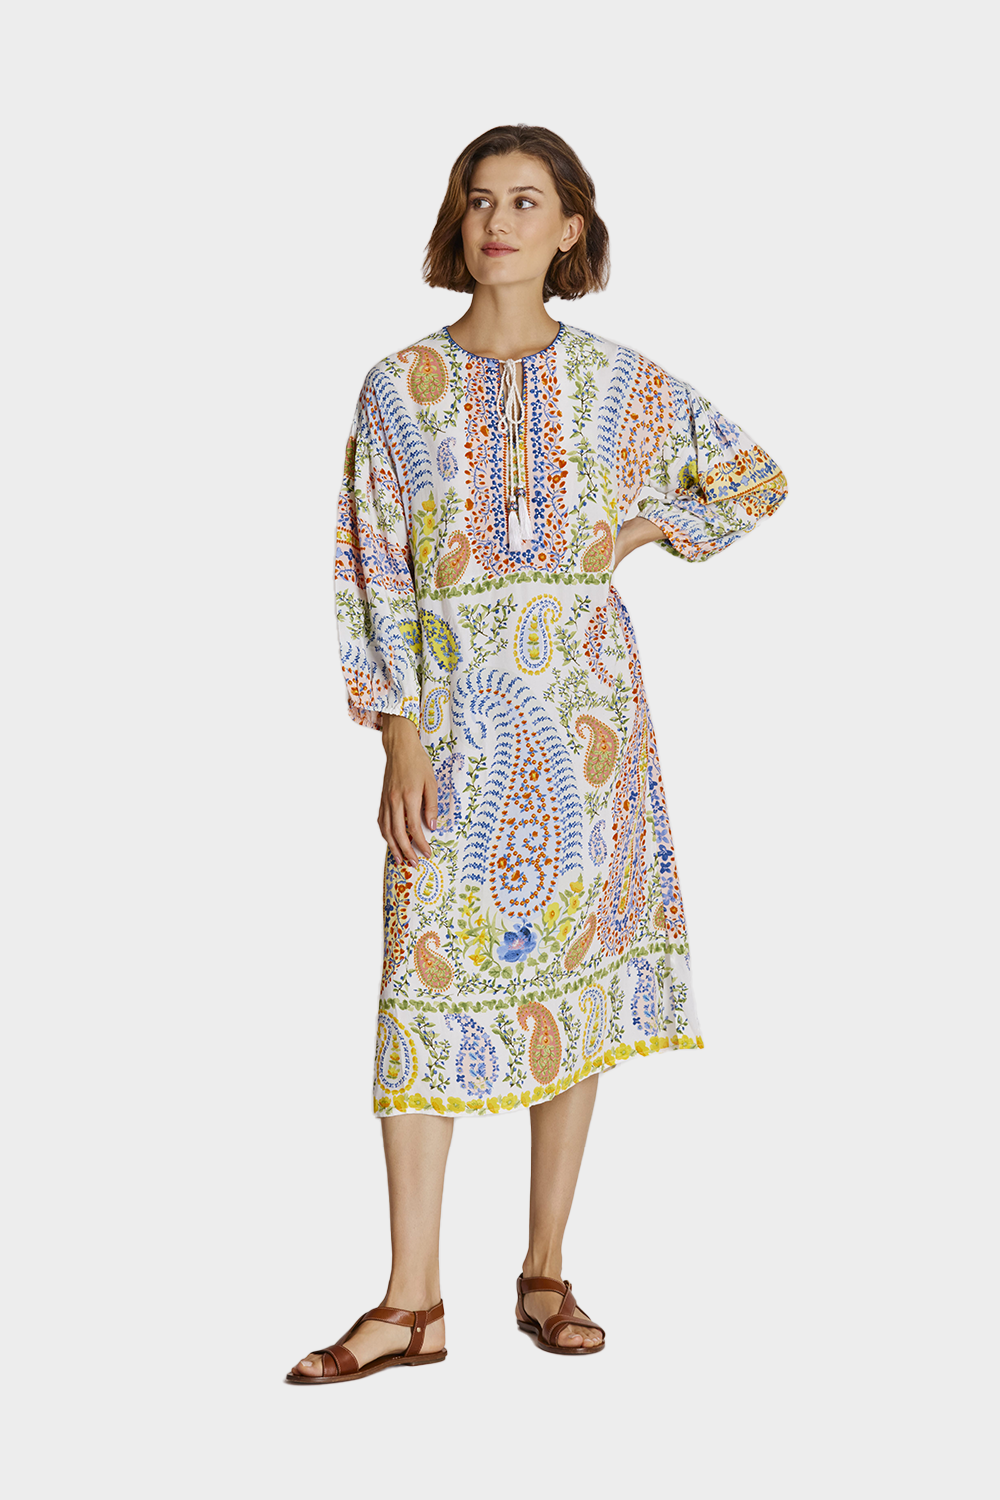 שמלת מידי לנשים הדפס פייזלי RENE DERHY Vendome online | ונדום .